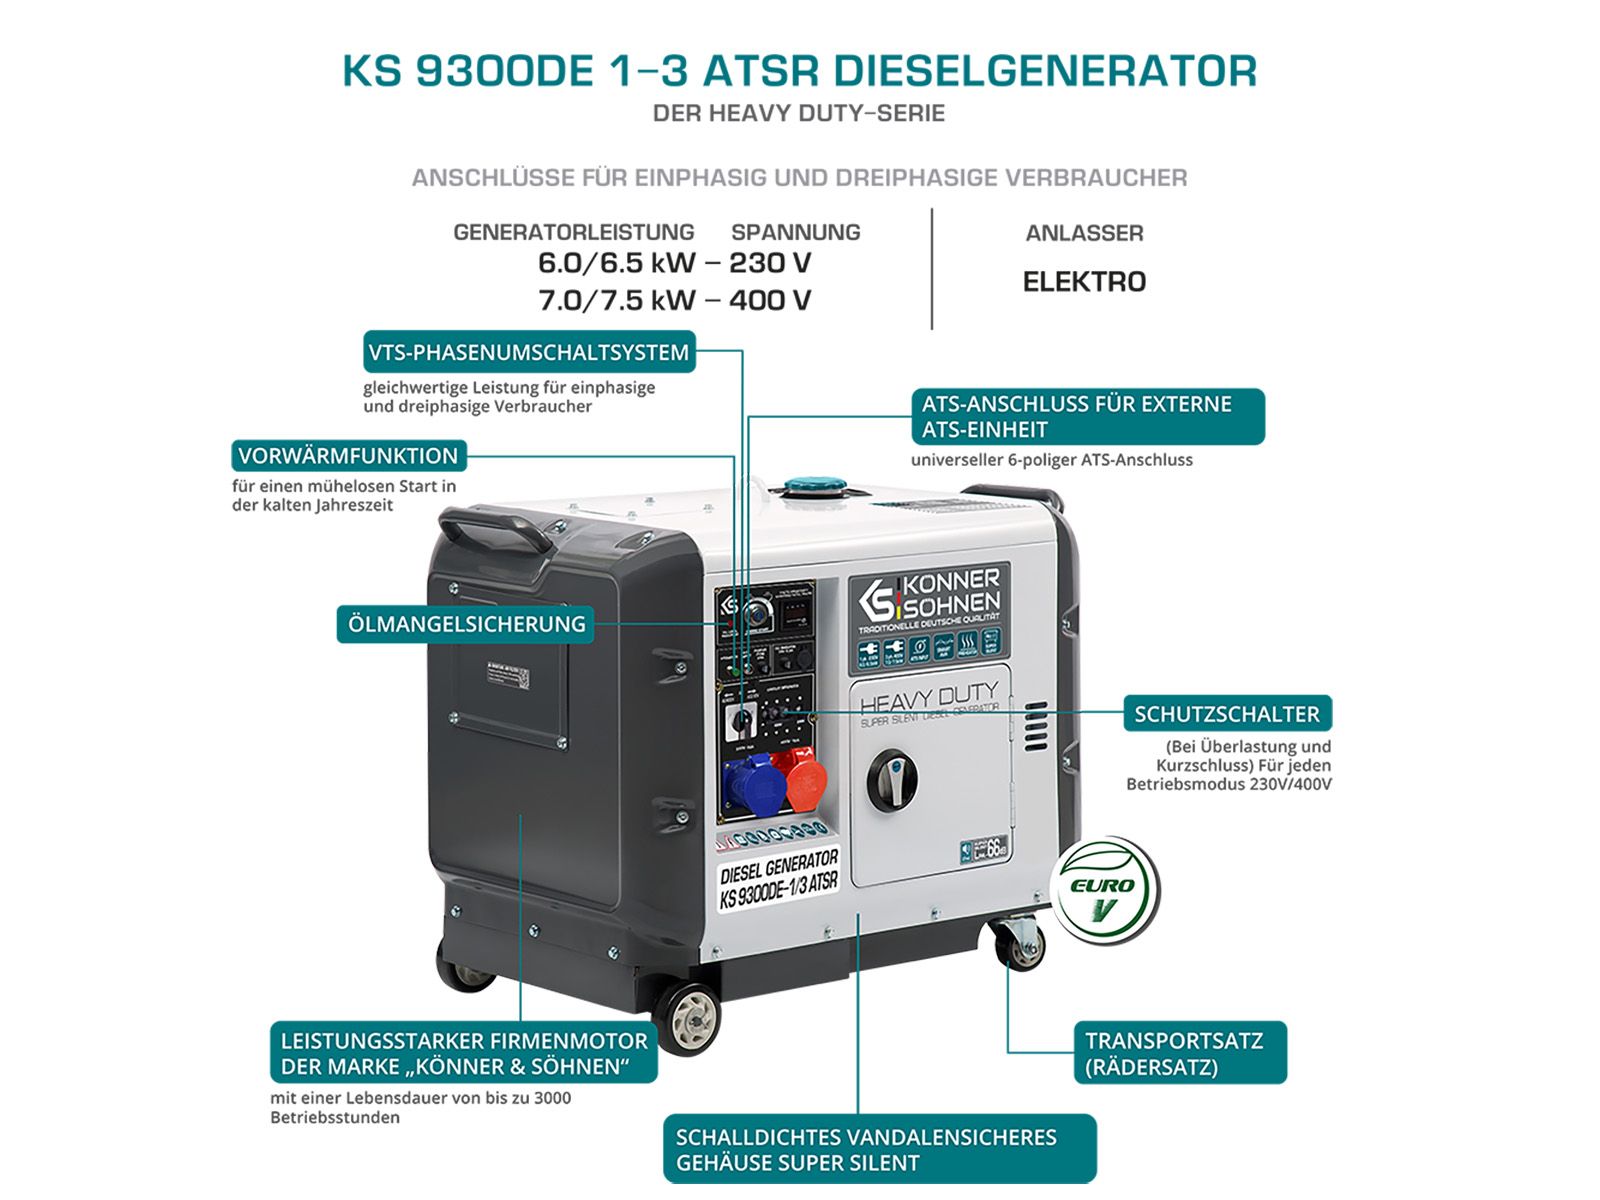 Könner und Söhnen Diesel Generator KS9300DE-1/3ATS